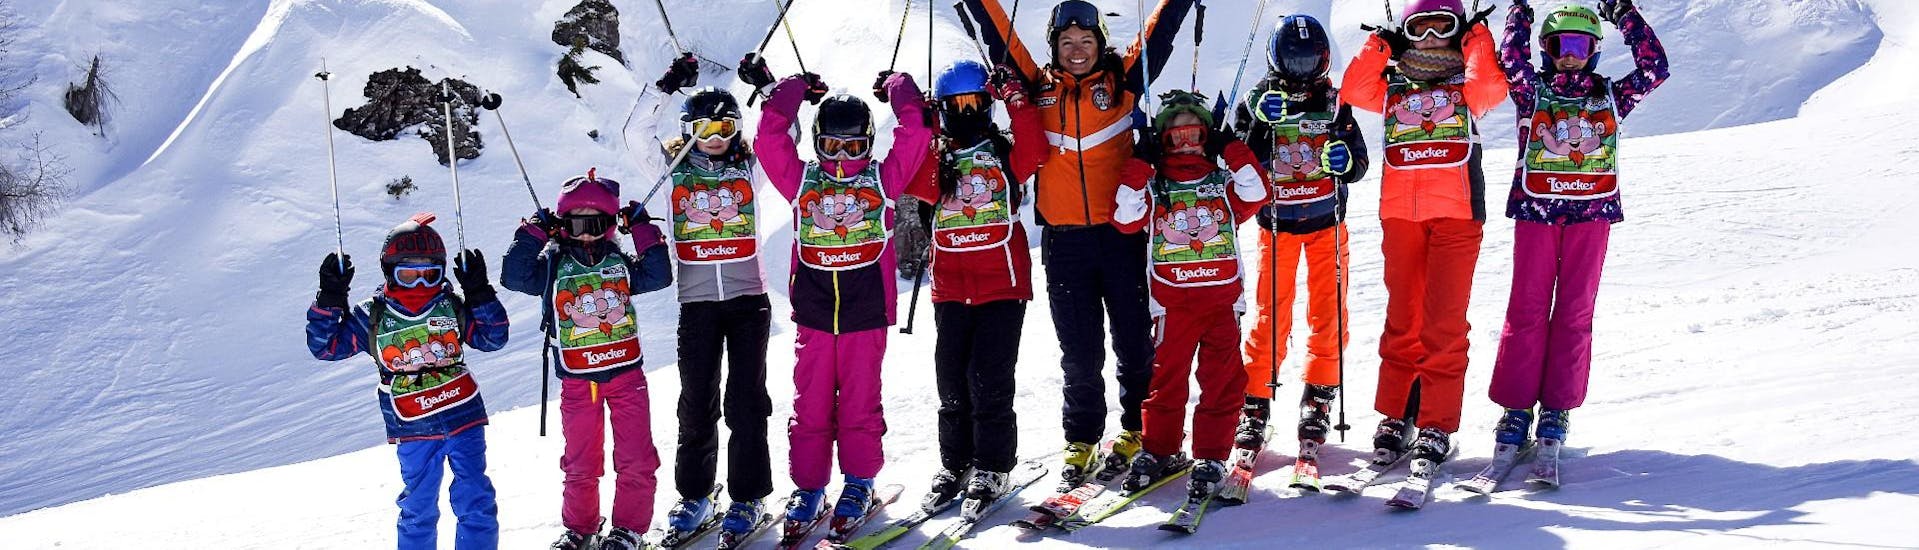 Bambini che si divertono con il maestro di sci a Falcade dopo una delle lezioni di sci per bambini (4-12 anni) per tutti i livelli.